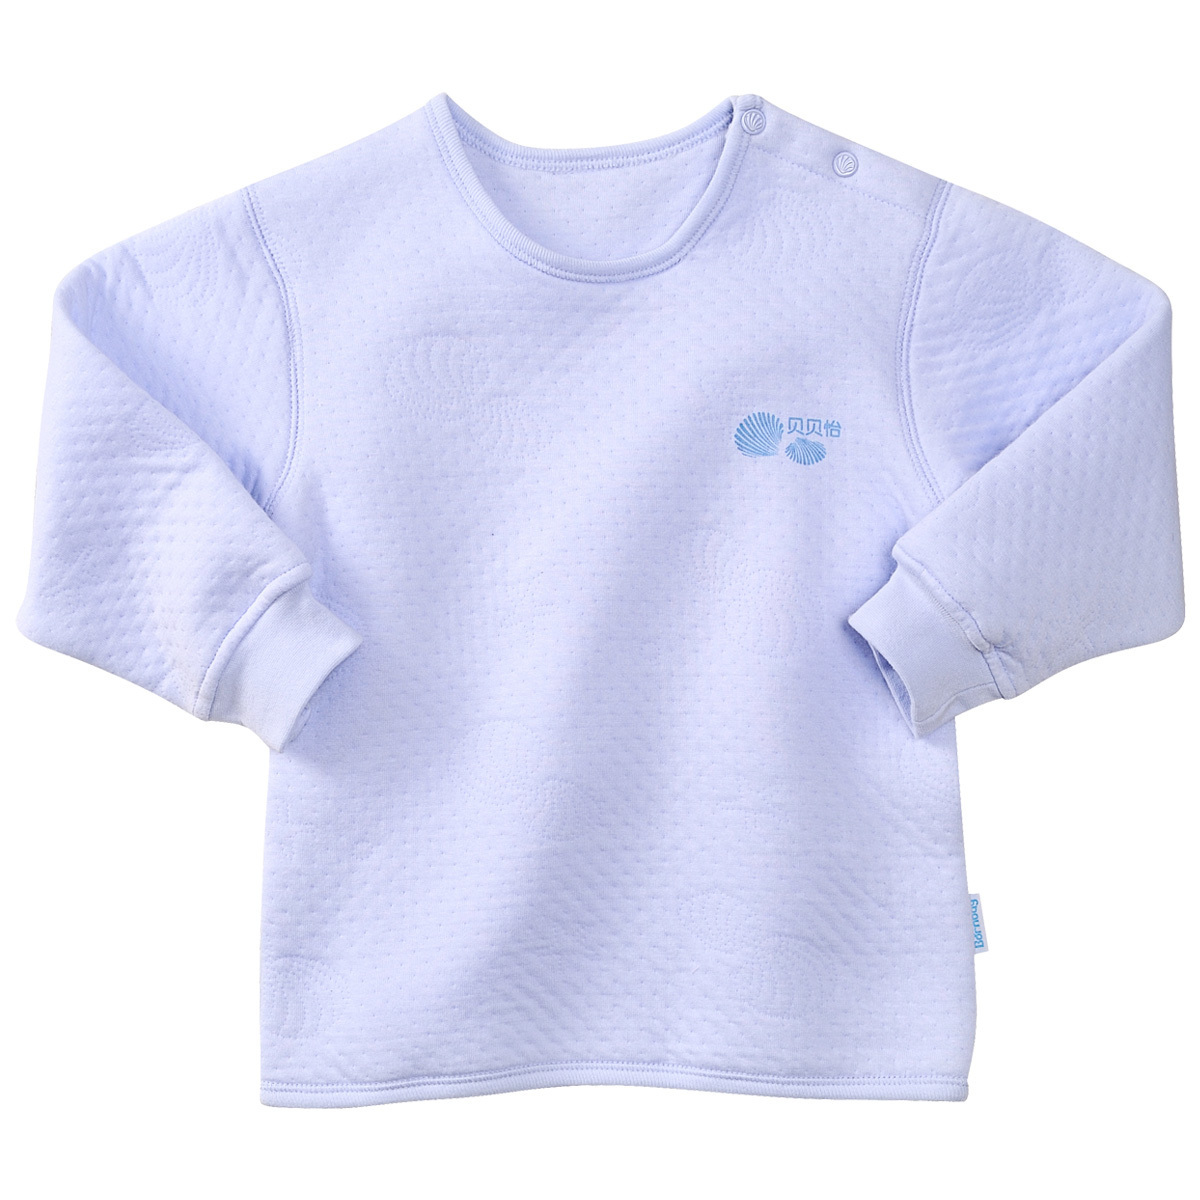 Baby winter newborn clothes male cotton button top baby underwear 100% cotton